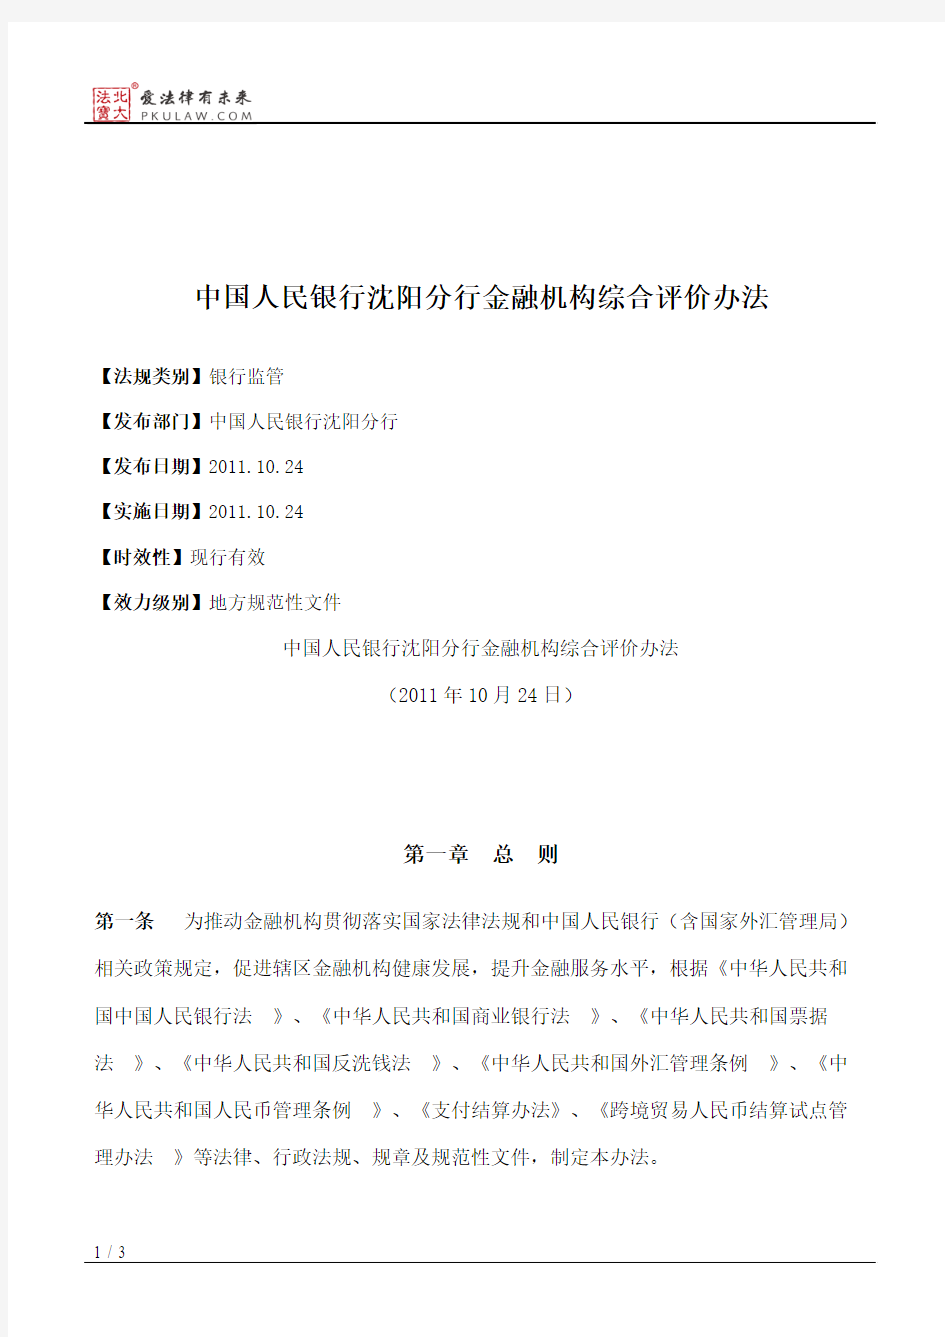 中国人民银行沈阳分行金融机构综合评价办法